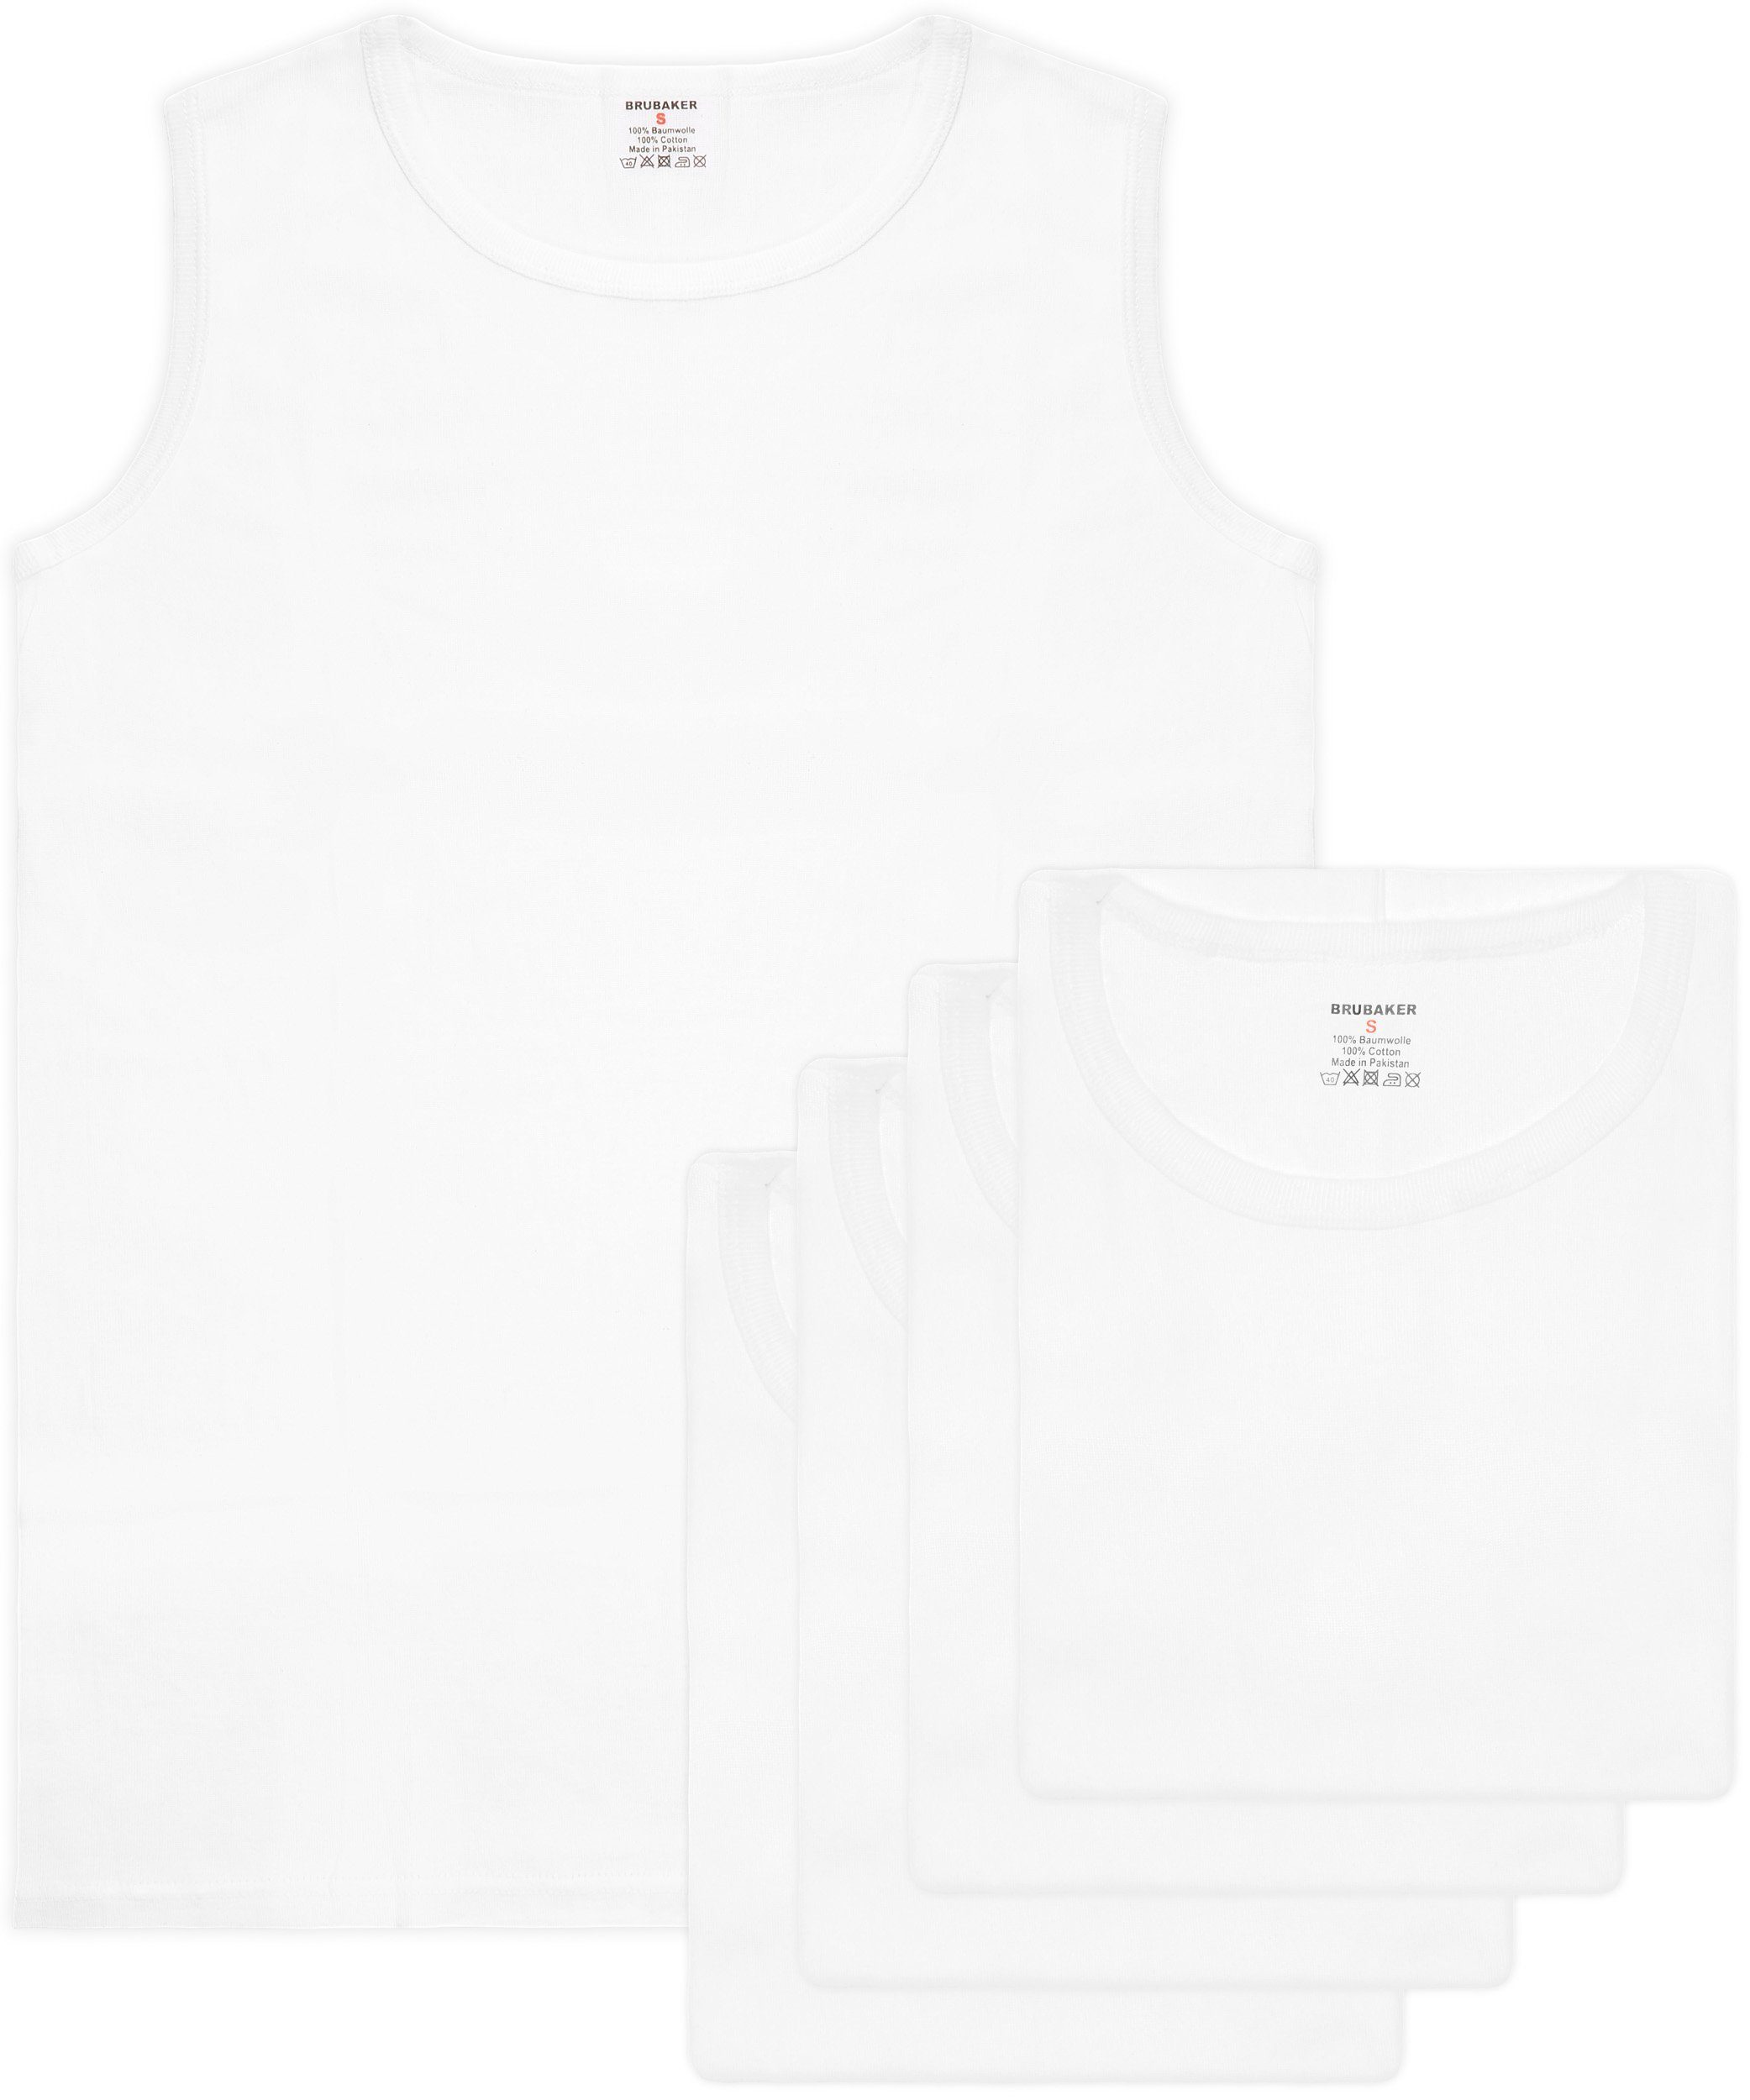 BRUBAKER Muskelshirt (5er-Pack) Unterhemd Tank Schlichtes mit Herren Weiß Top Lang Baumwolle hochwertiger Männer, für Rundhals Ausschnitt (glatt), Extra Tanktop aus Basic Achselshirt